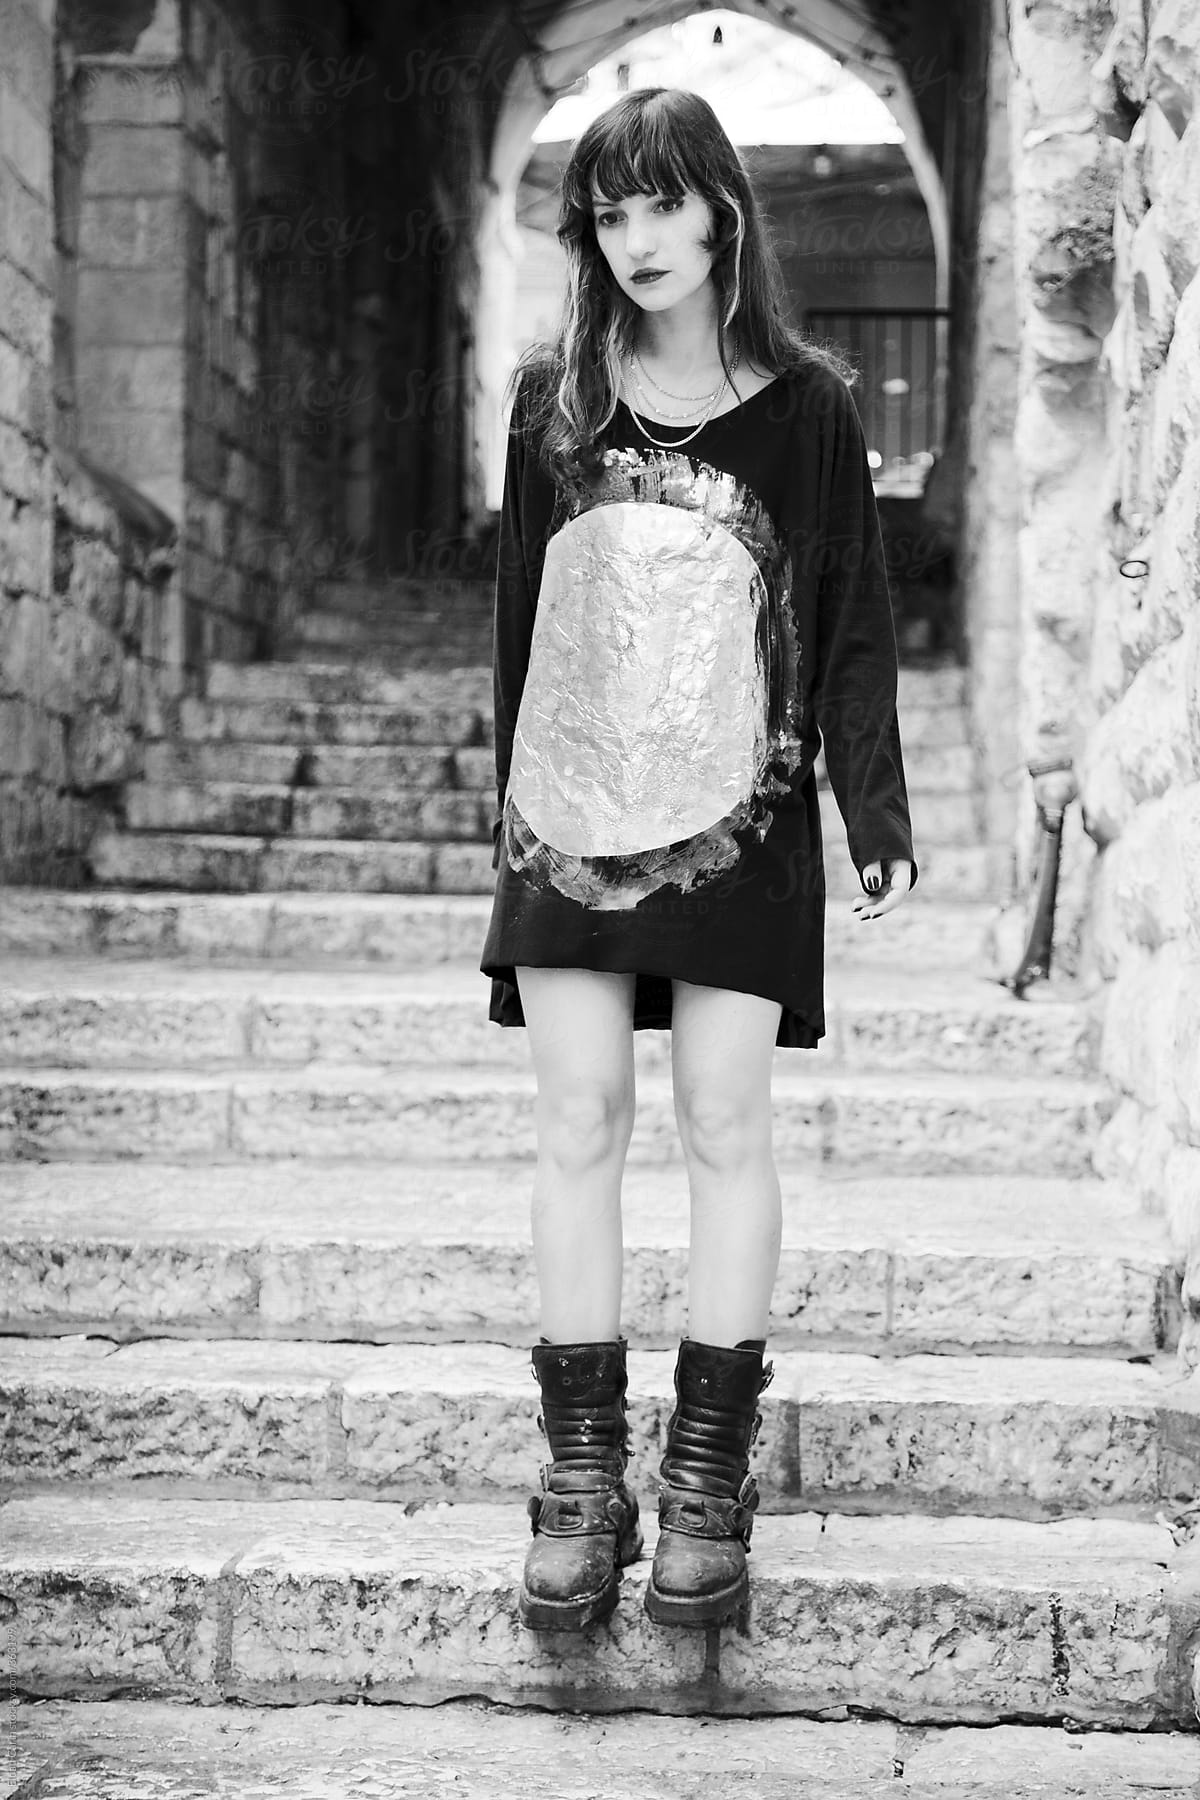 Stylish Woman at an Old Jerusalem Street